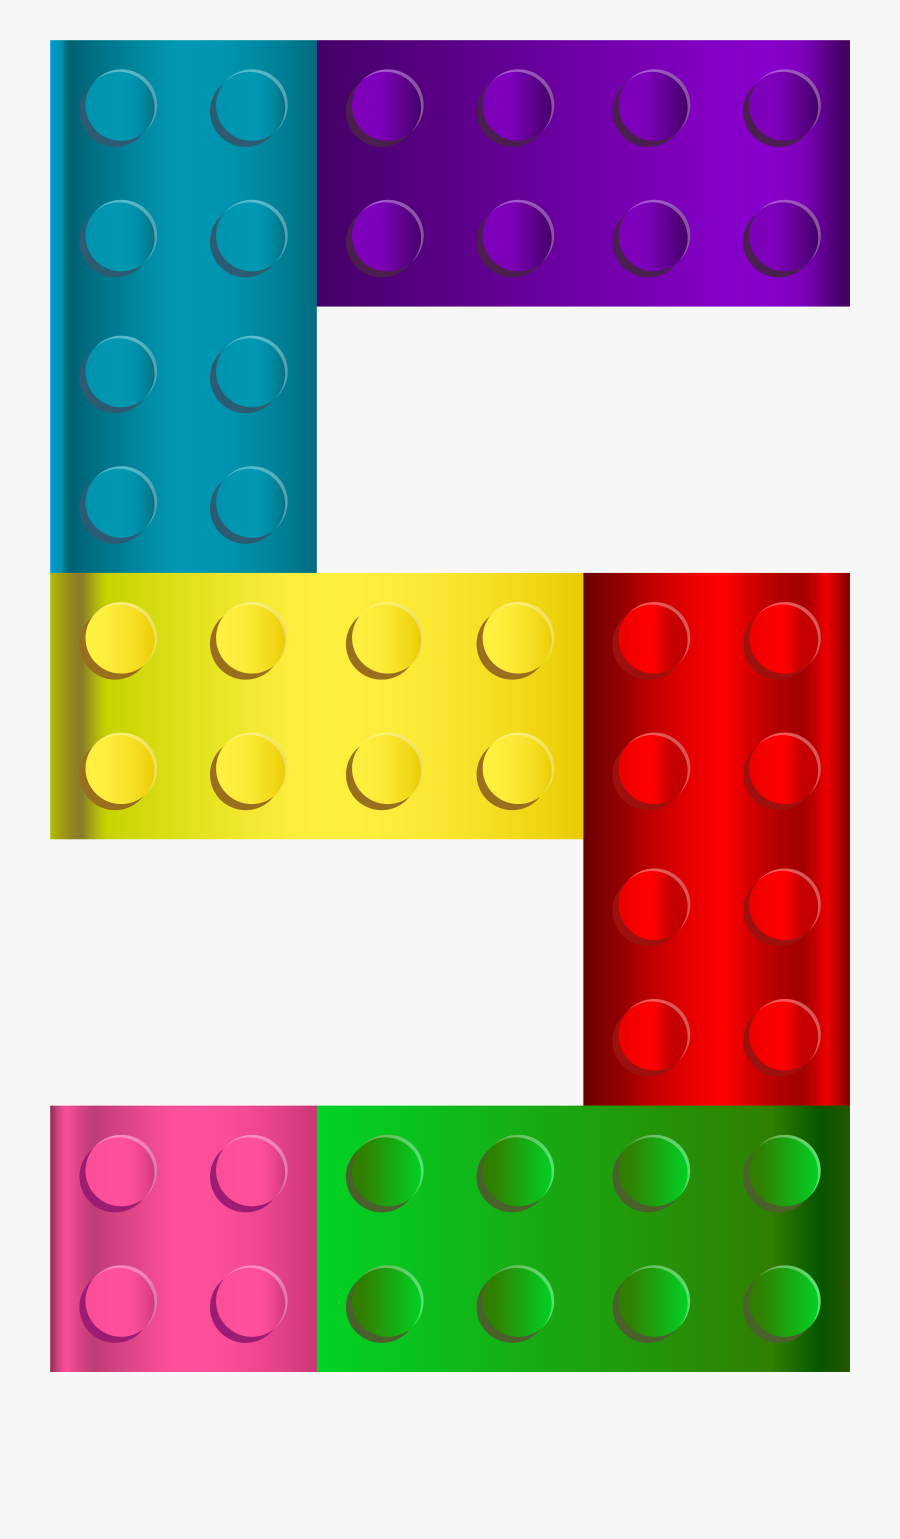 Lego Number Five Transparent Clip Art Image - Lego Number 5 Clipart, Transparent Clipart